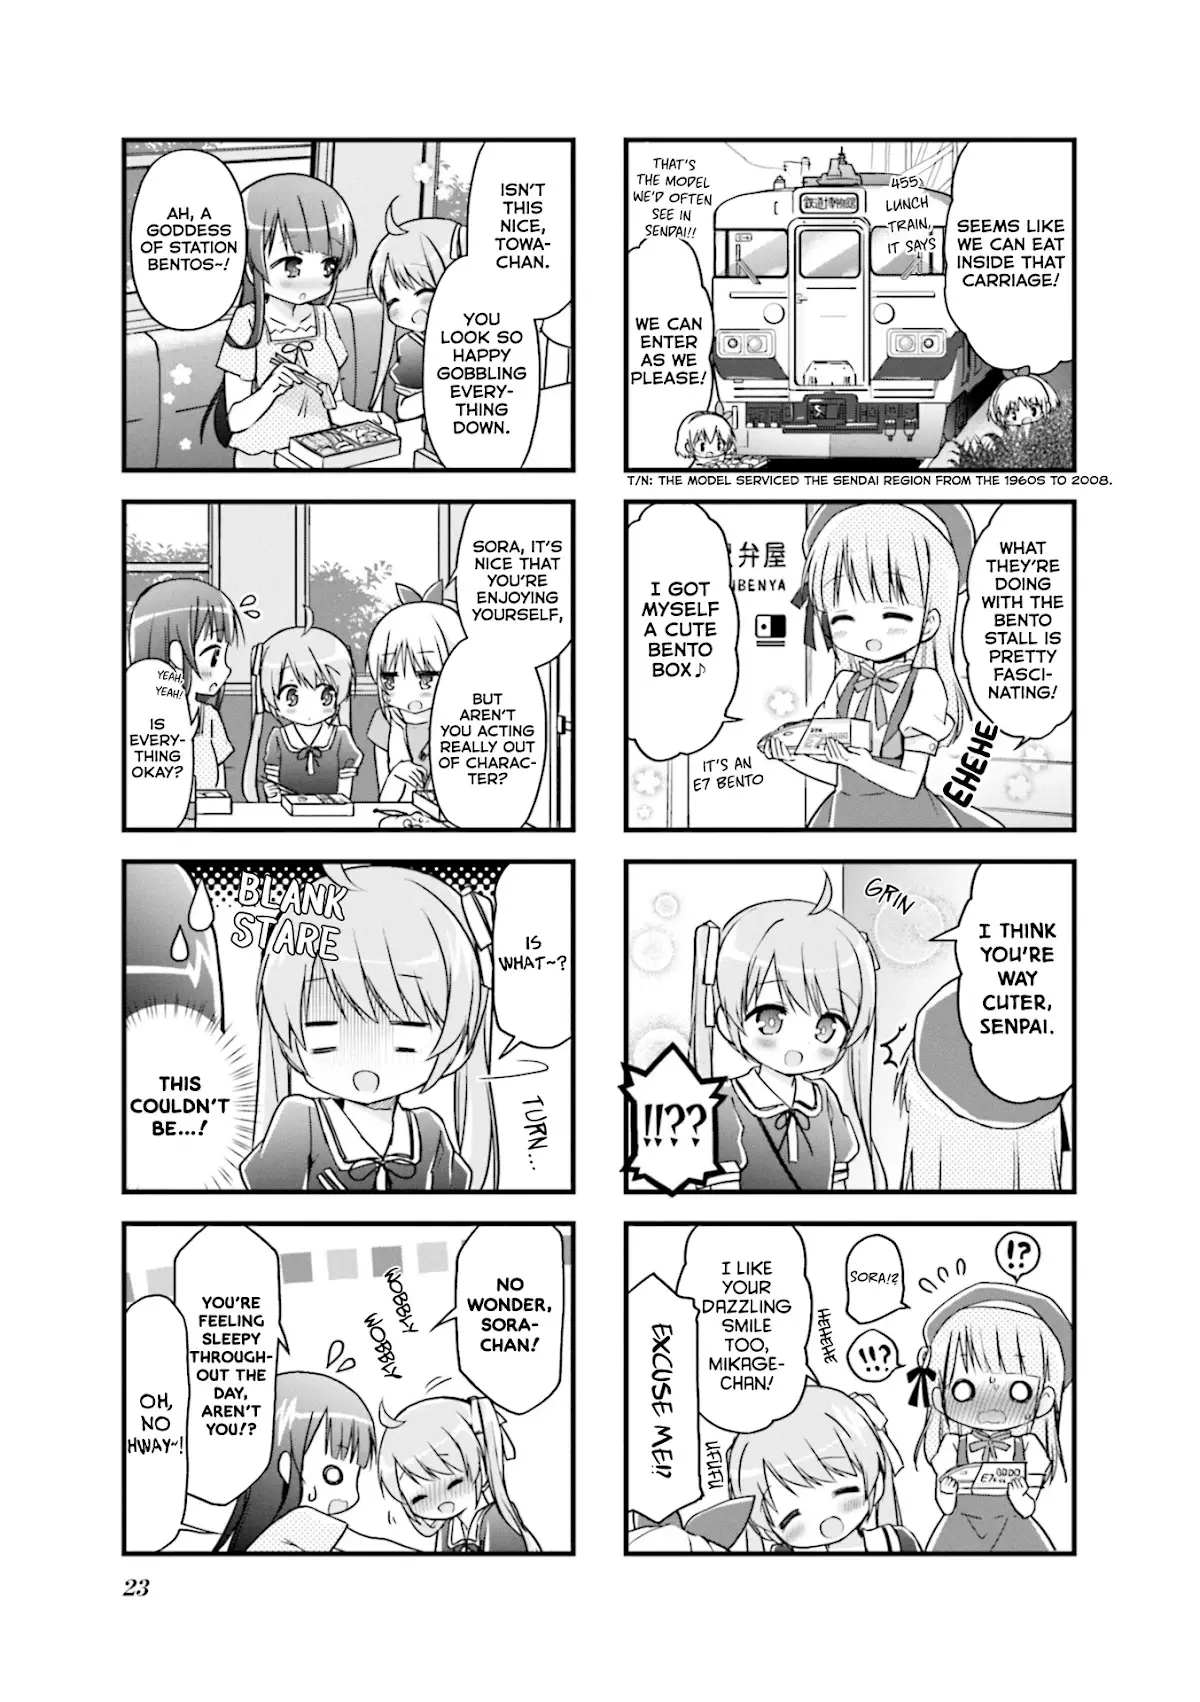 Hatsukoi*rail Trip - 15 page 7-ede921e4